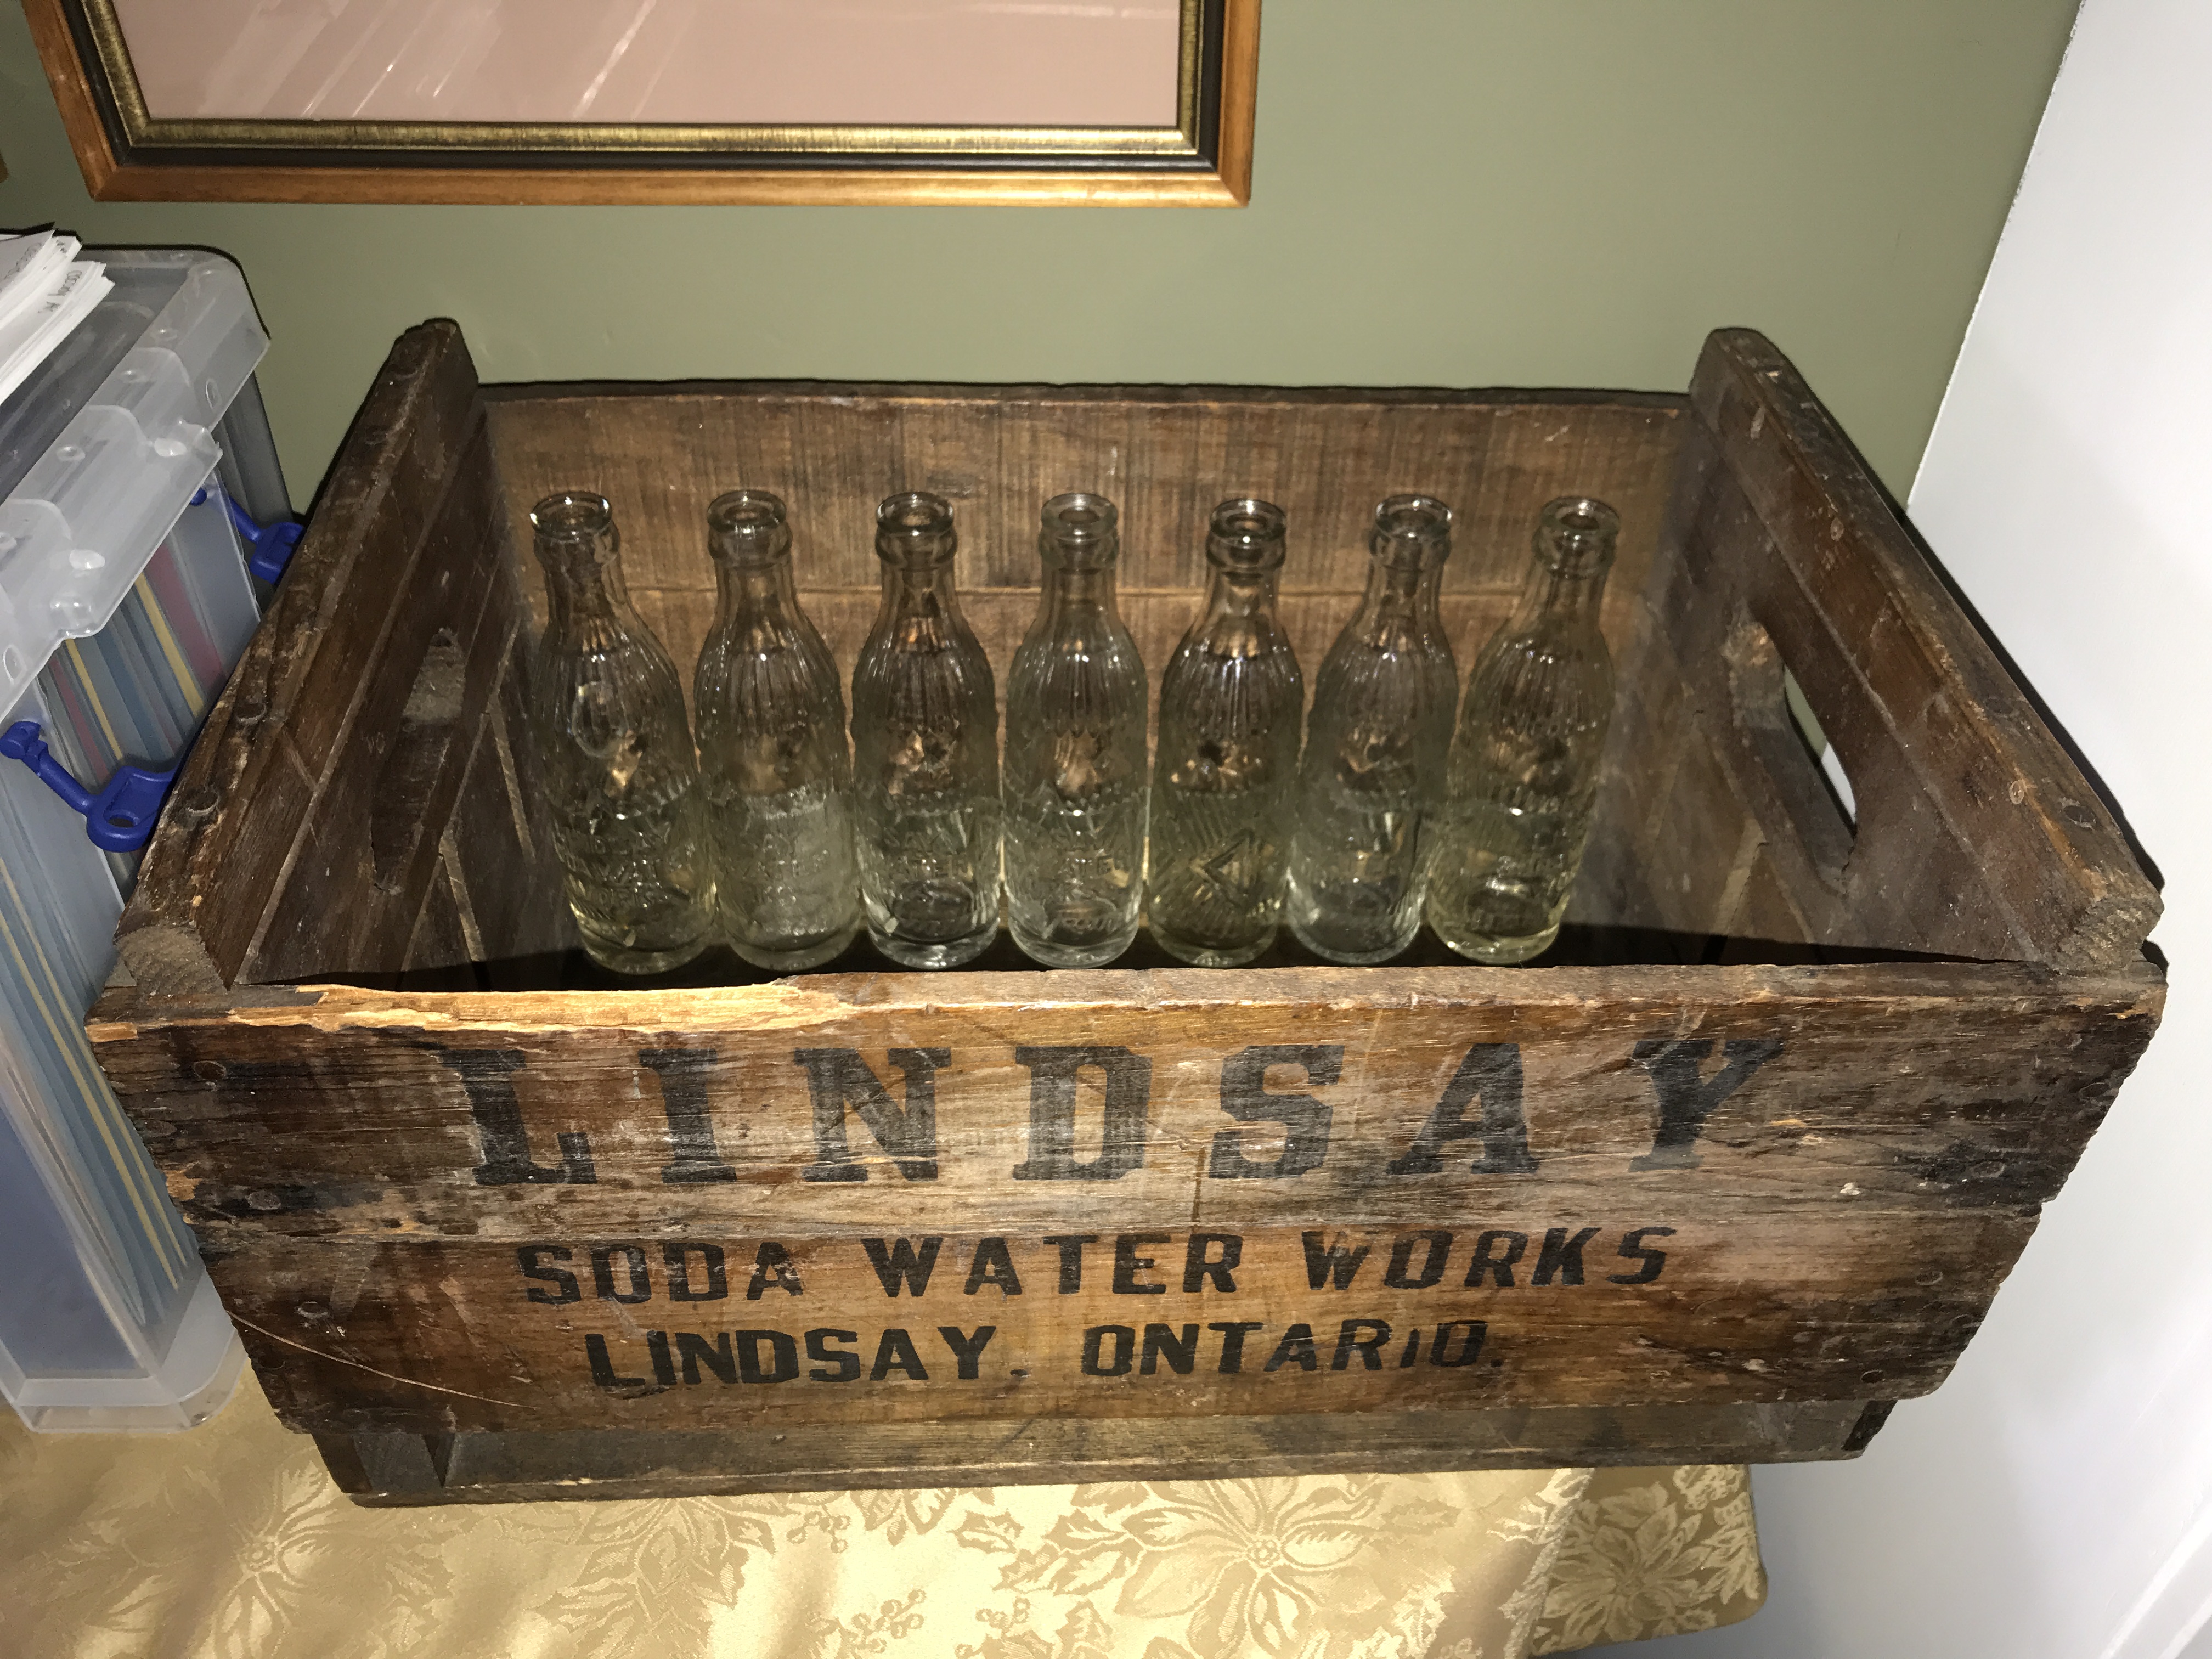 Lindsay Soda Water Works.JPG